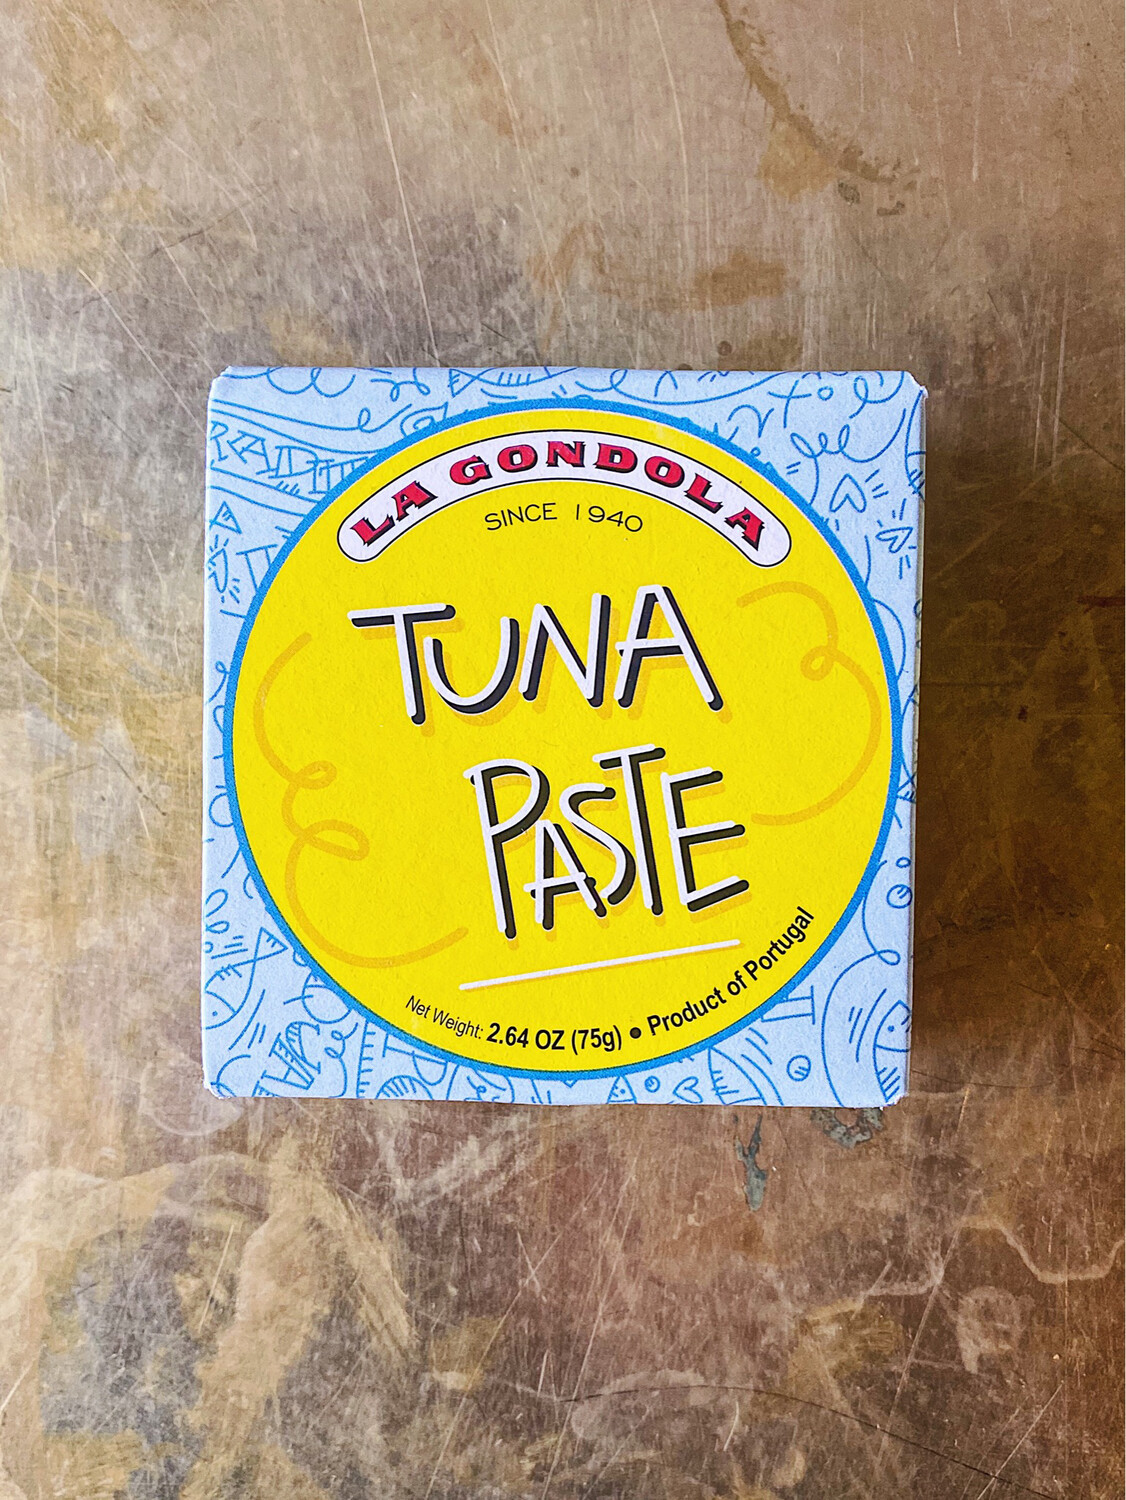 La Gondola Tuna Paste